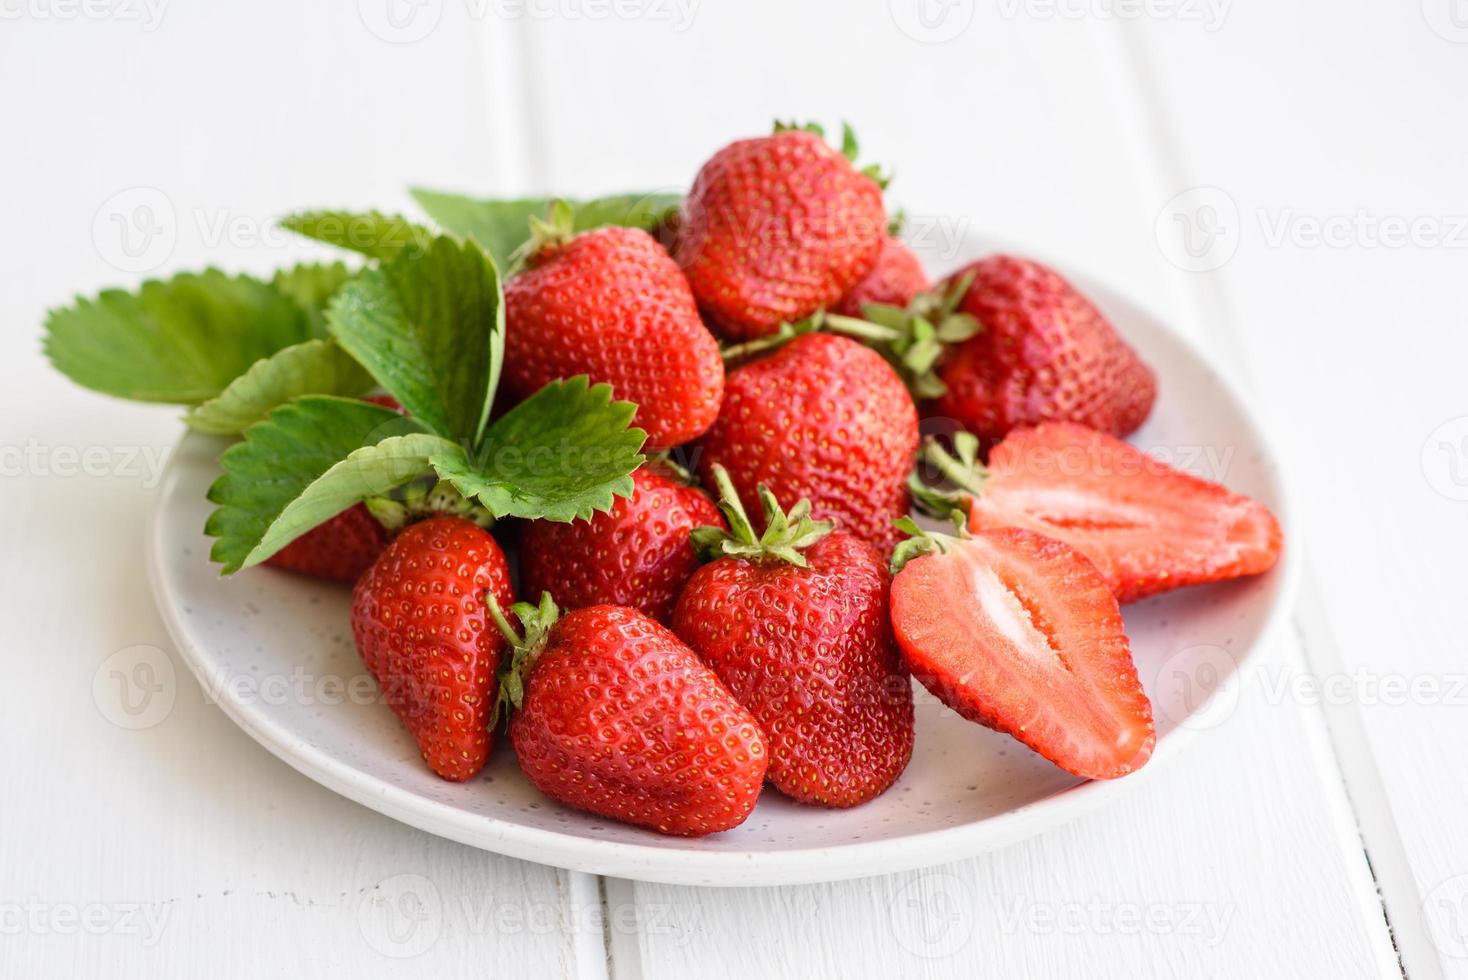 schöne saftig frische Erdbeeren auf der Betonoberfläche foto